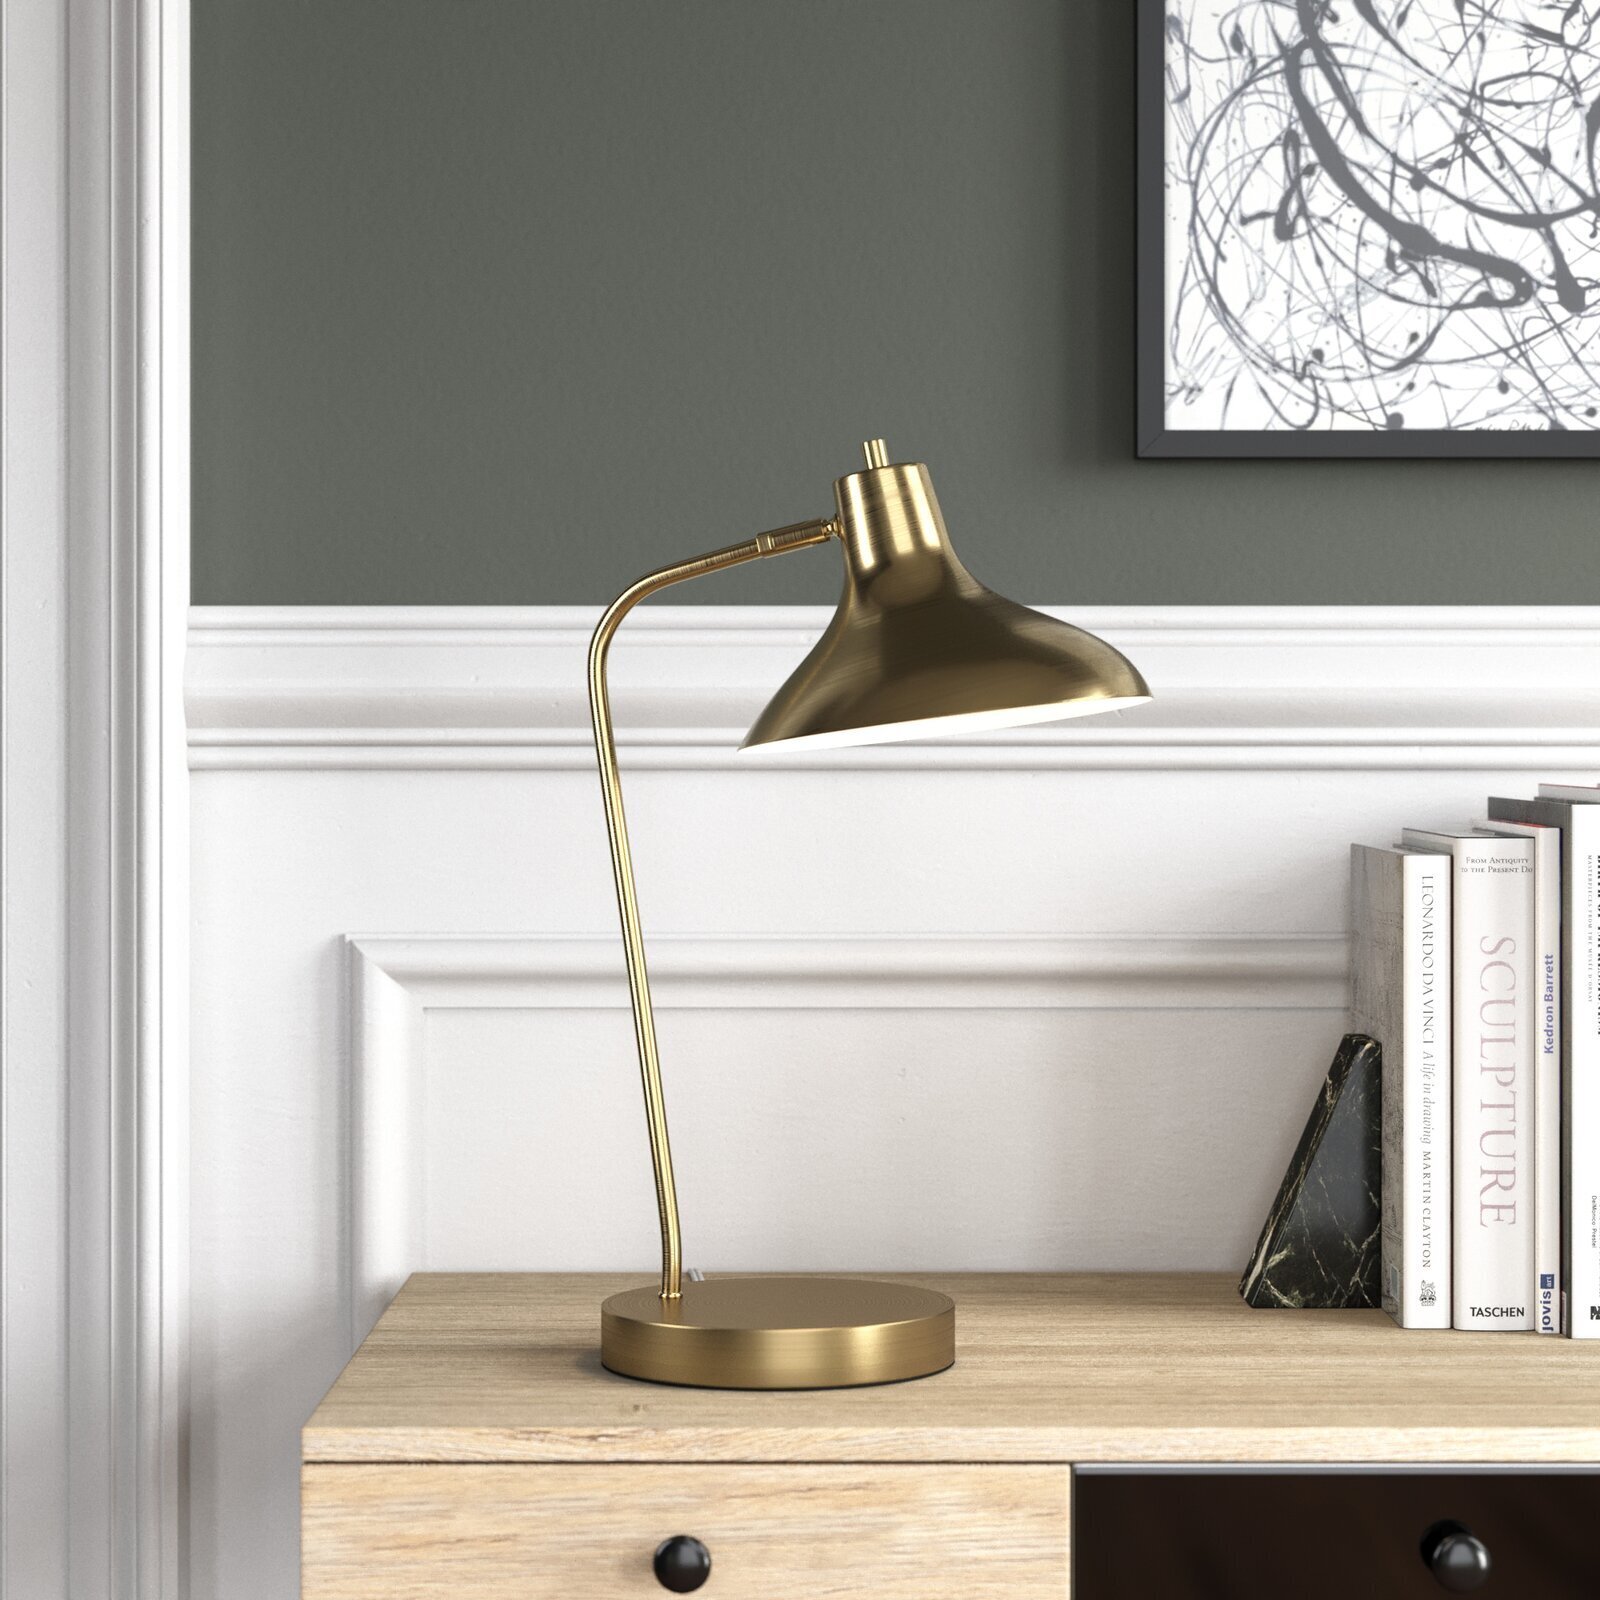 Bell shaped desk lamp